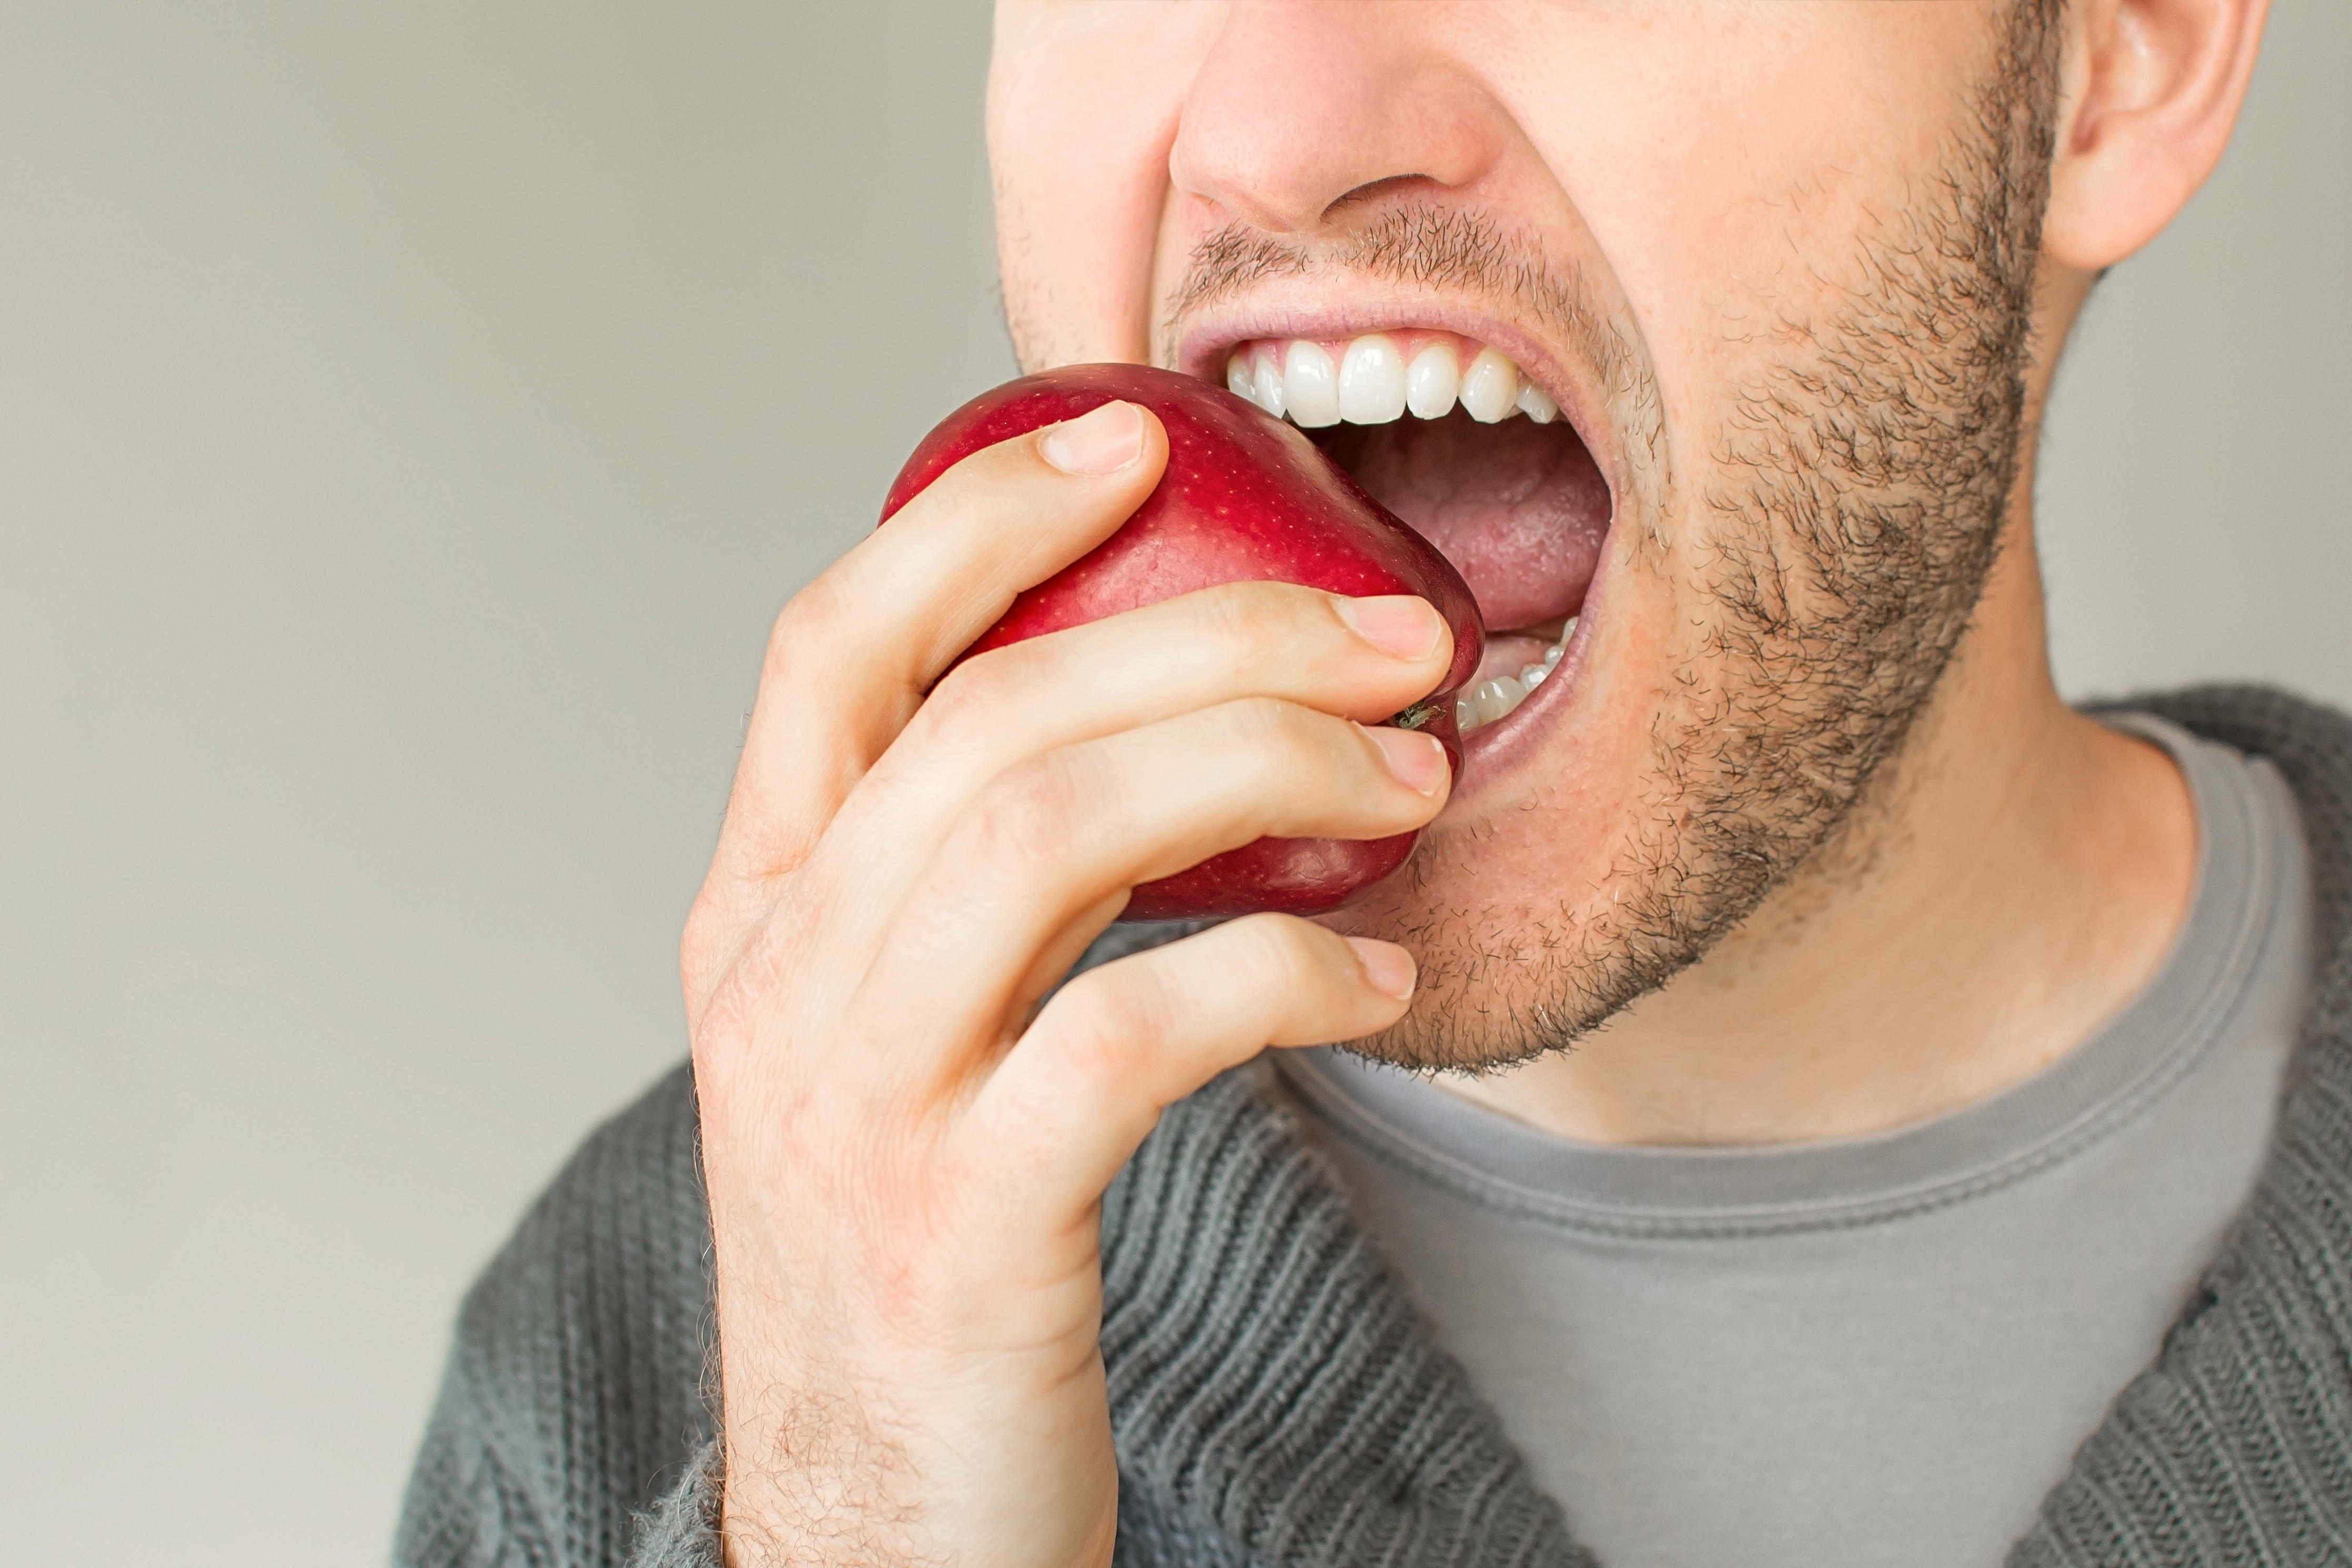 Мужчина ест яблоко